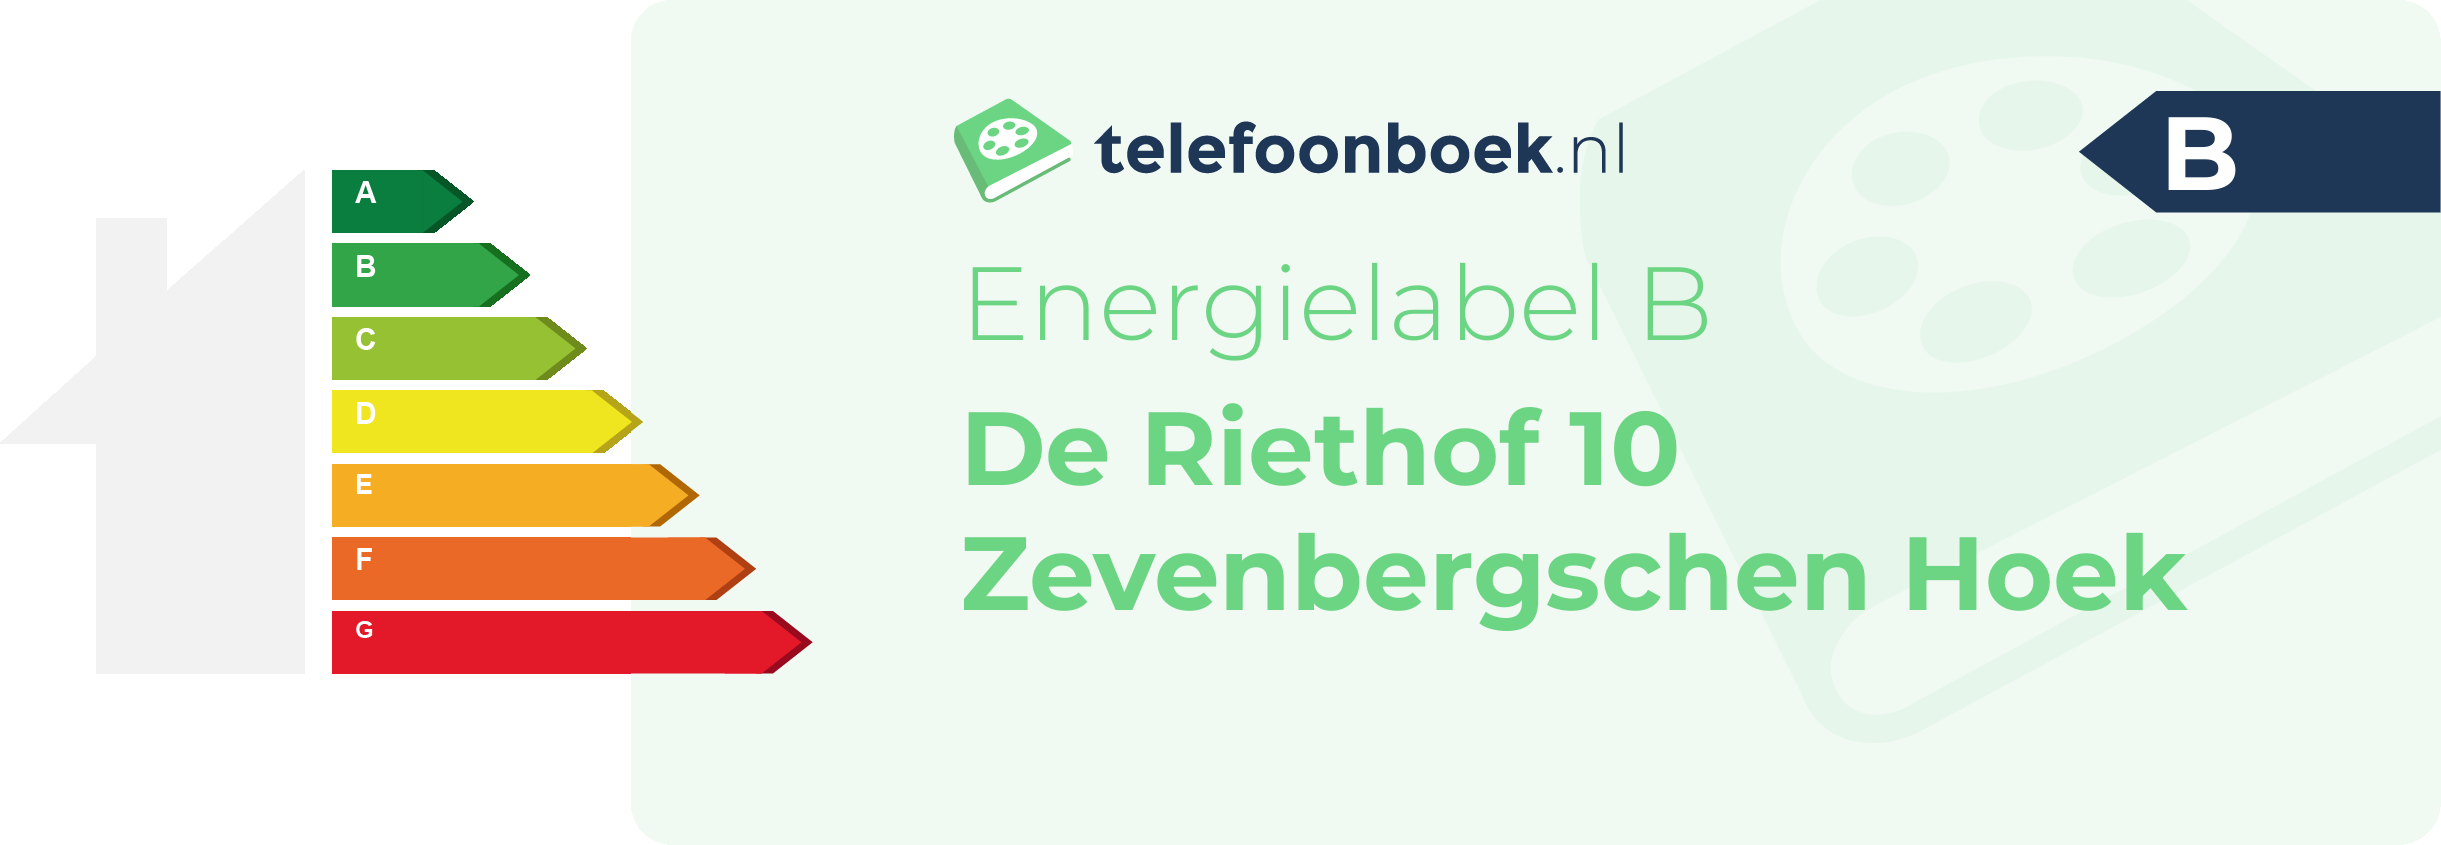 Energielabel De Riethof 10 Zevenbergschen Hoek